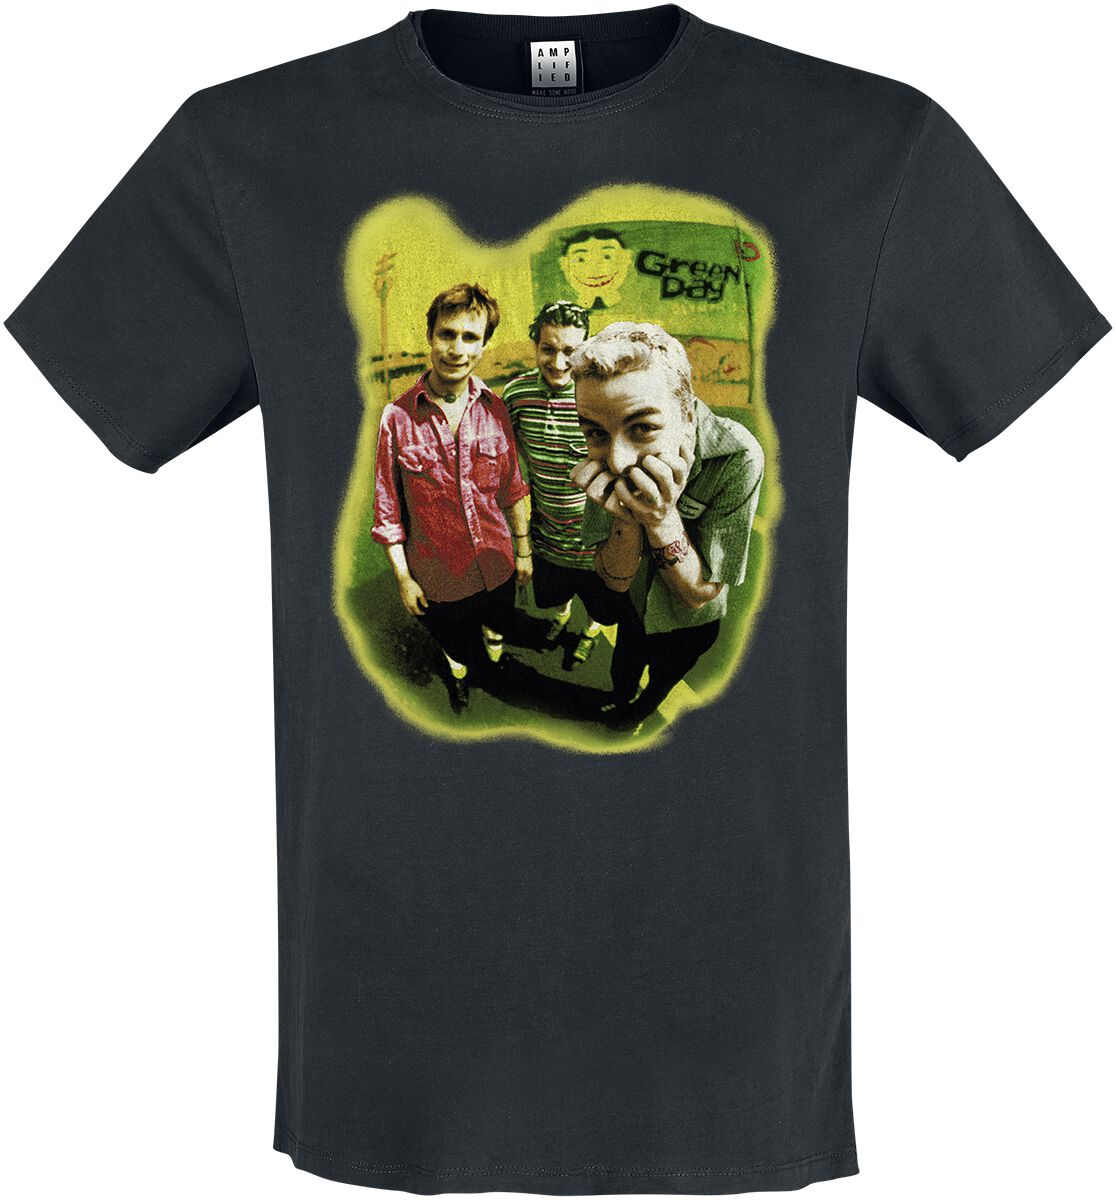 Green Day T-Shirt - Amplified Collection - Mugshot Rebels - M bis XL - für Männer - Größe M - schwarz  - Lizenziertes Merchandise!